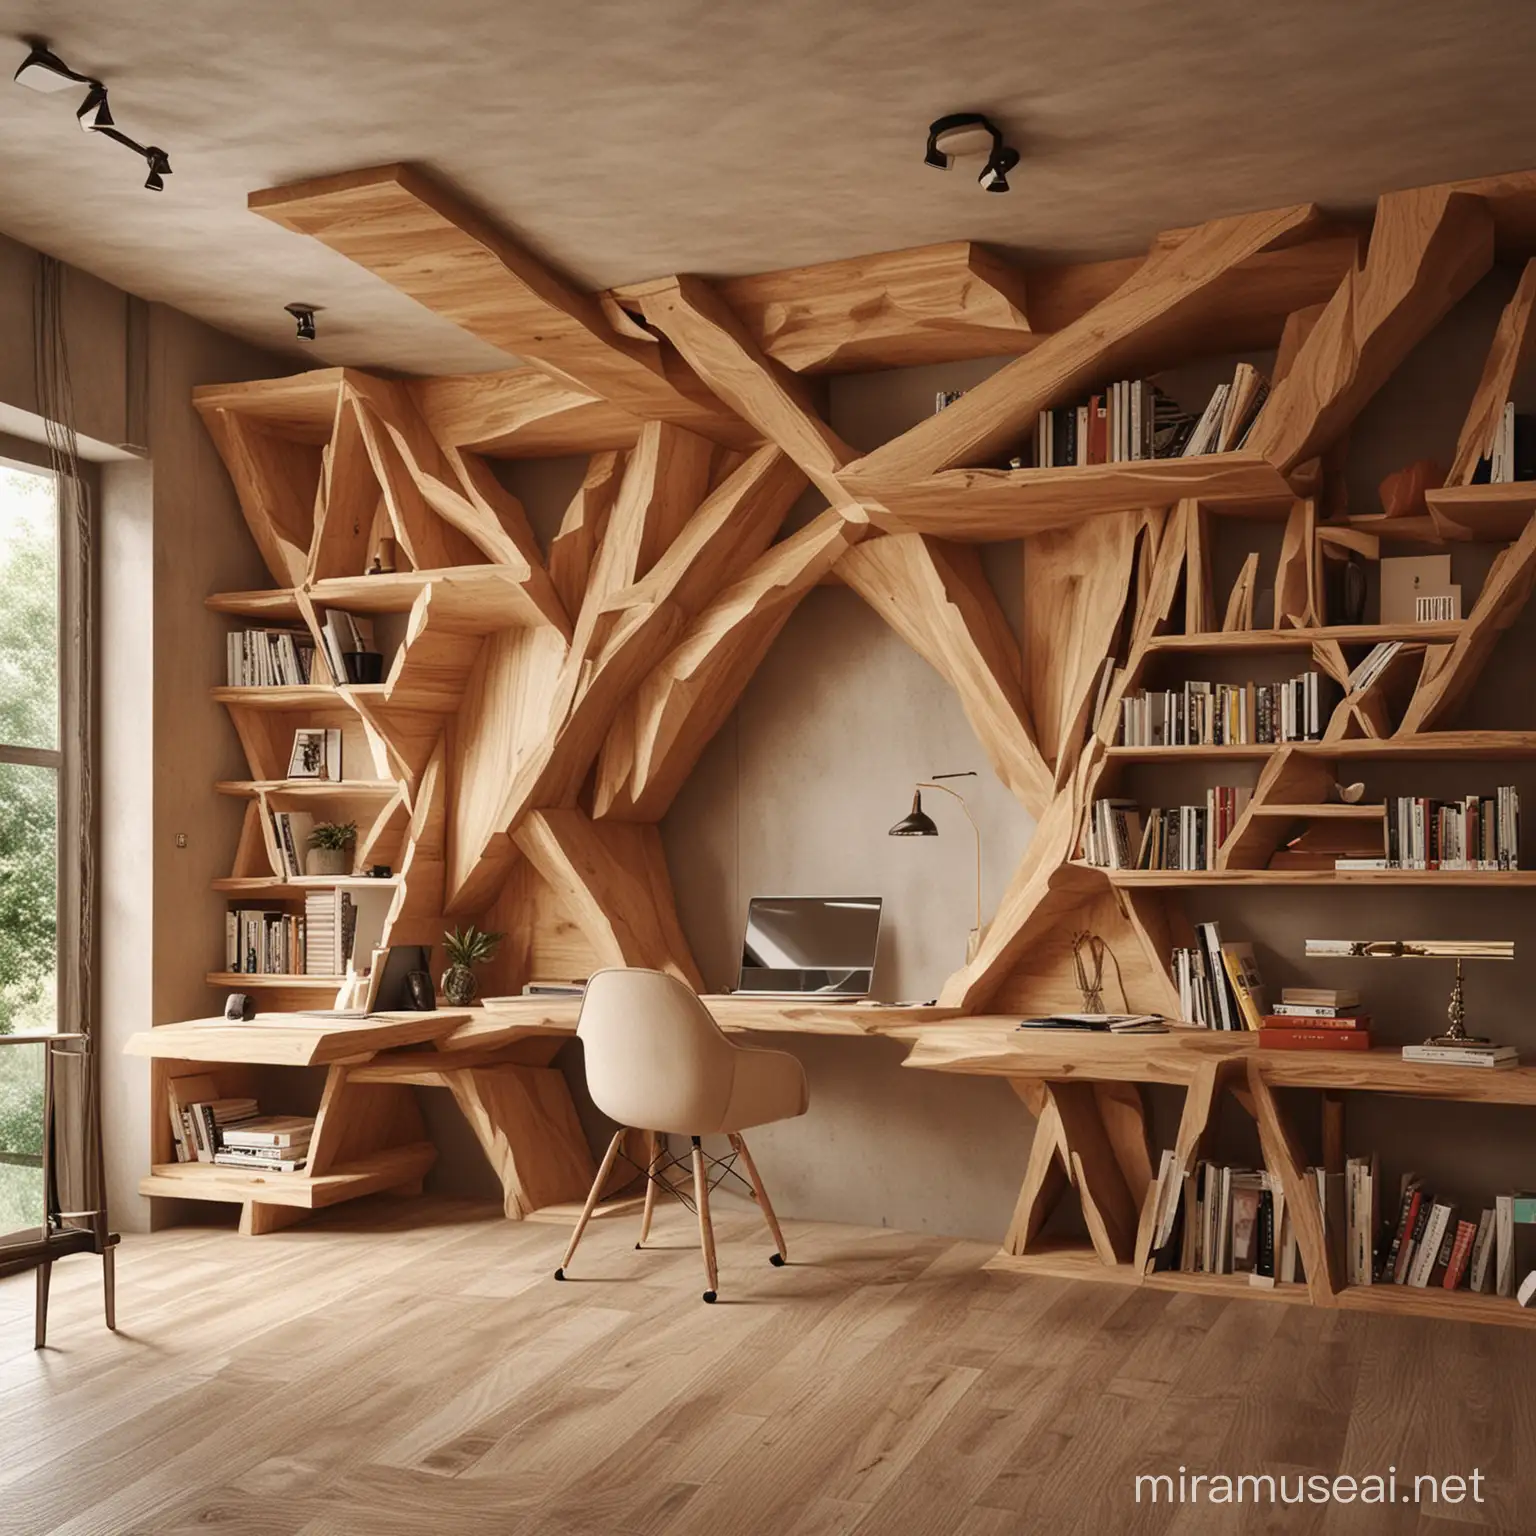 Handcrafted Wooden Furniture in Modern Interior Design